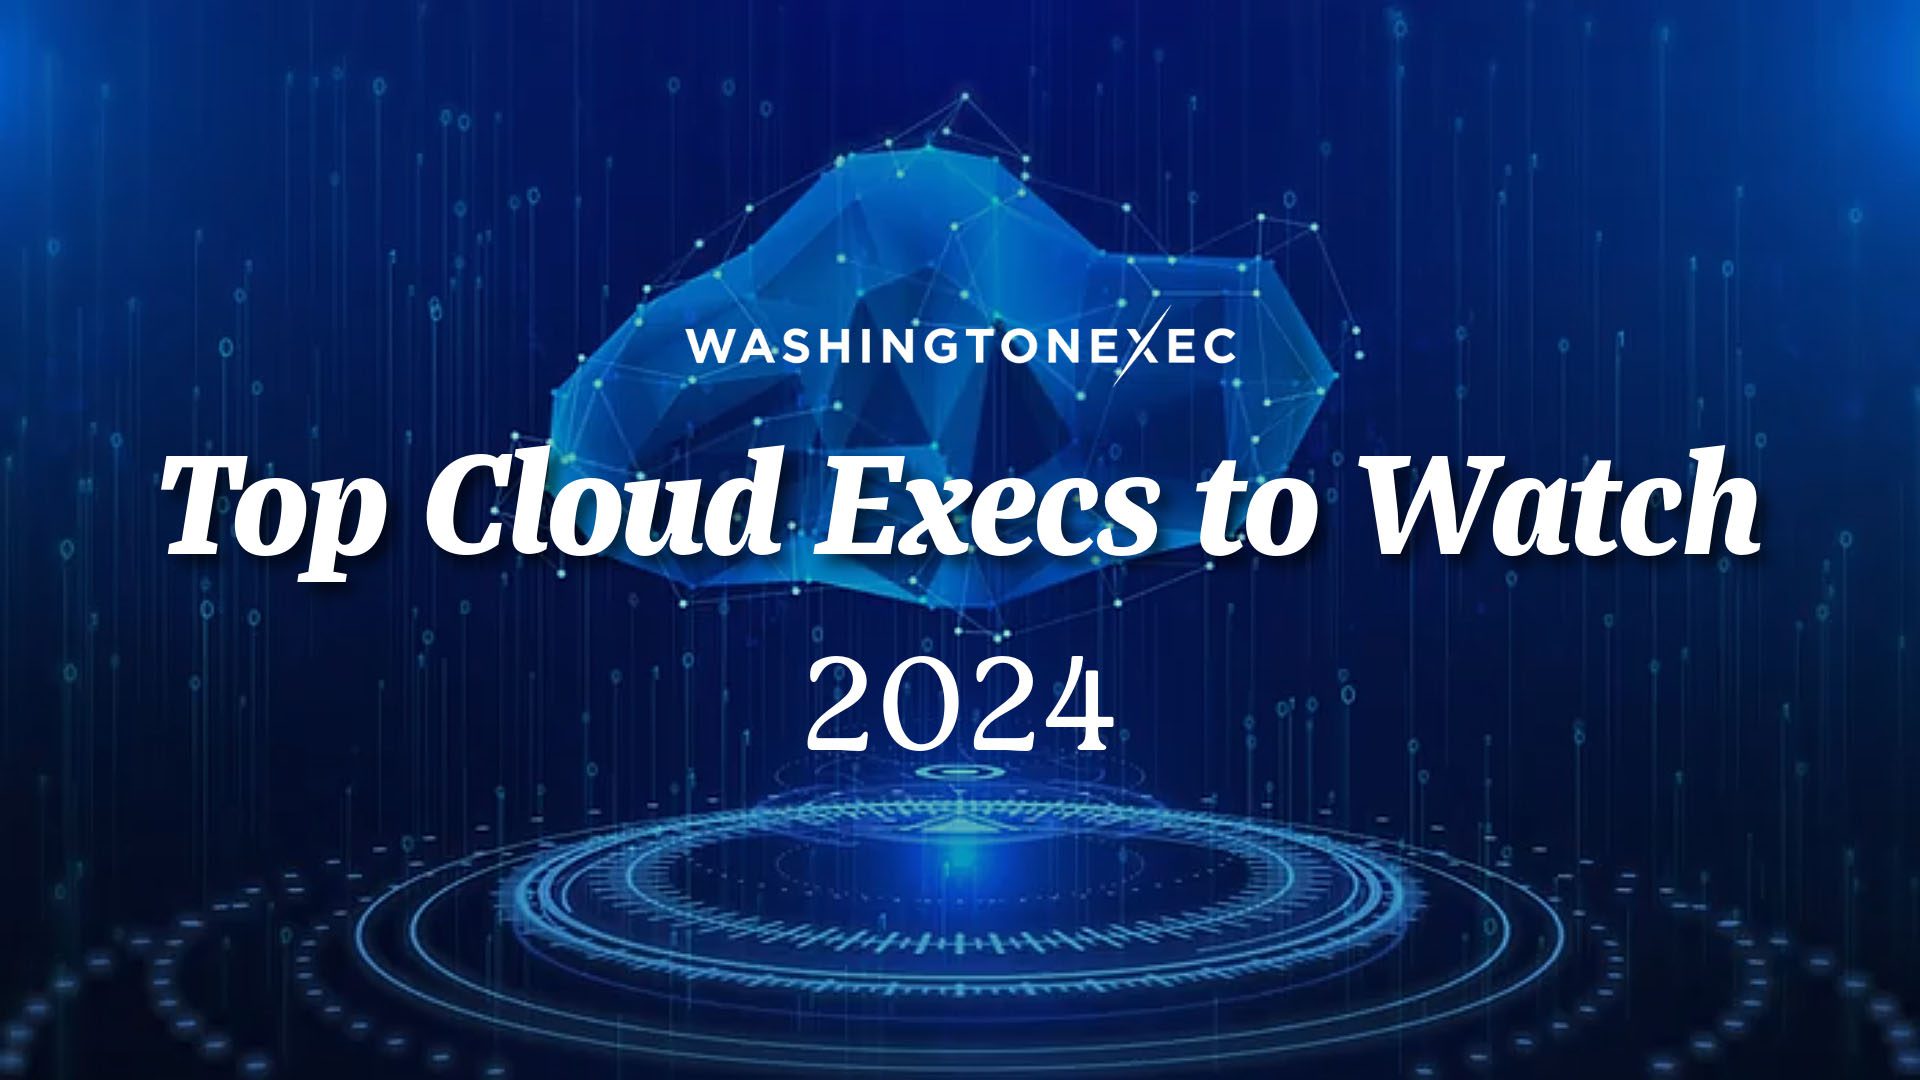 Top Cloud Execs to Watch in 2024